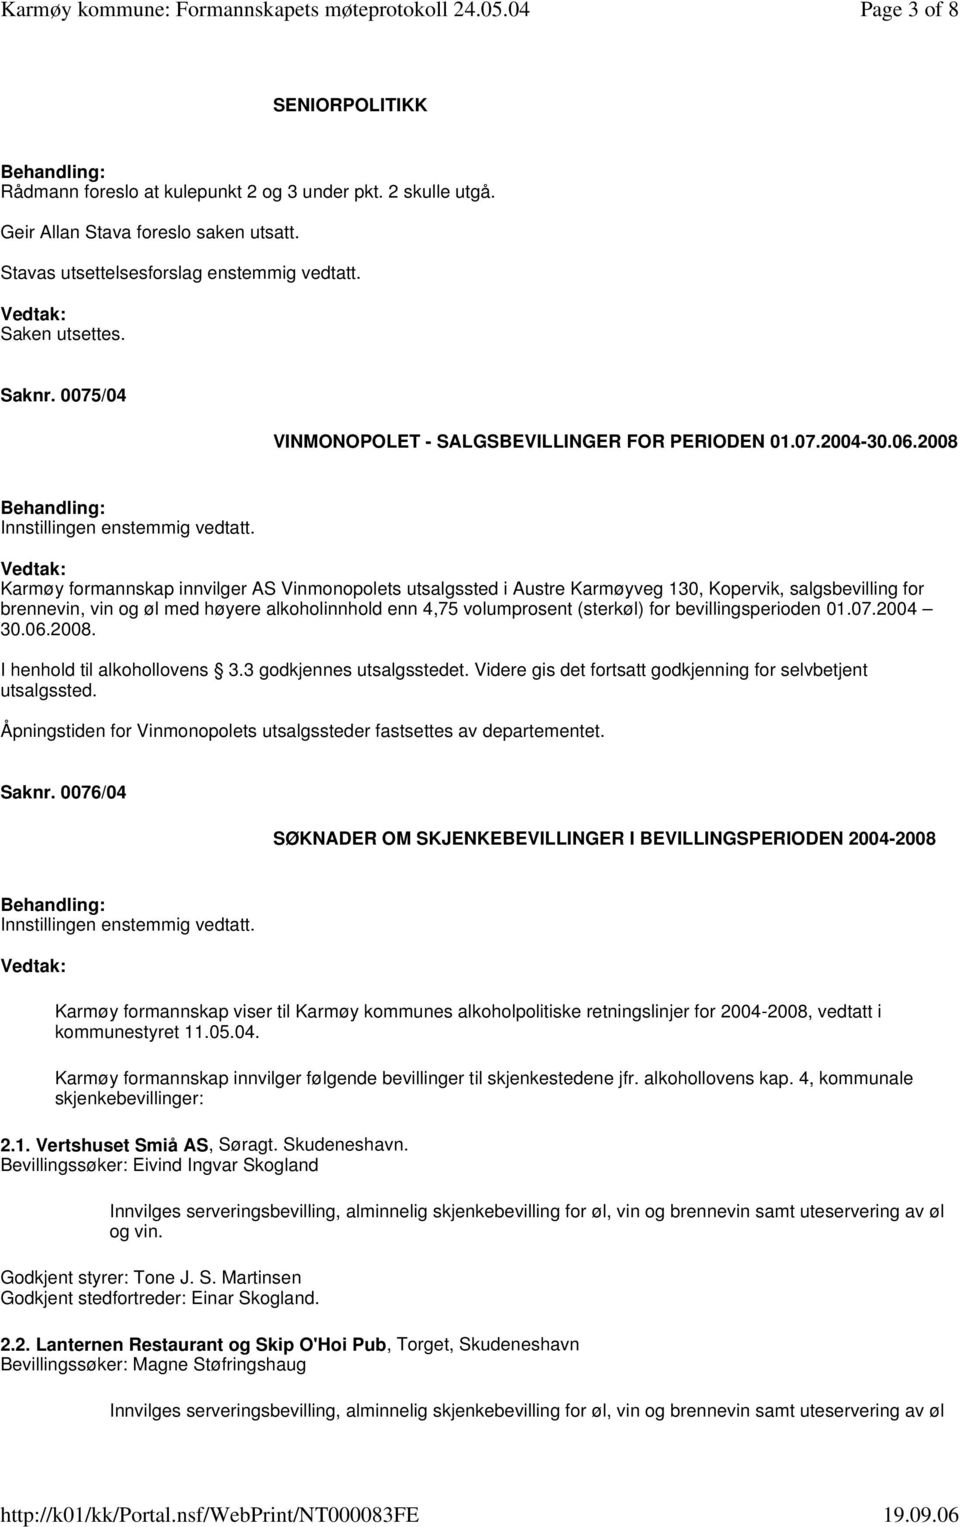 2008 Karmøy formannskap innvilger AS Vinmonopolets utsalgssted i Austre Karmøyveg 130, Kopervik, salgsbevilling for brennevin, vin og øl med høyere alkoholinnhold enn 4,75 volumprosent (sterkøl) for